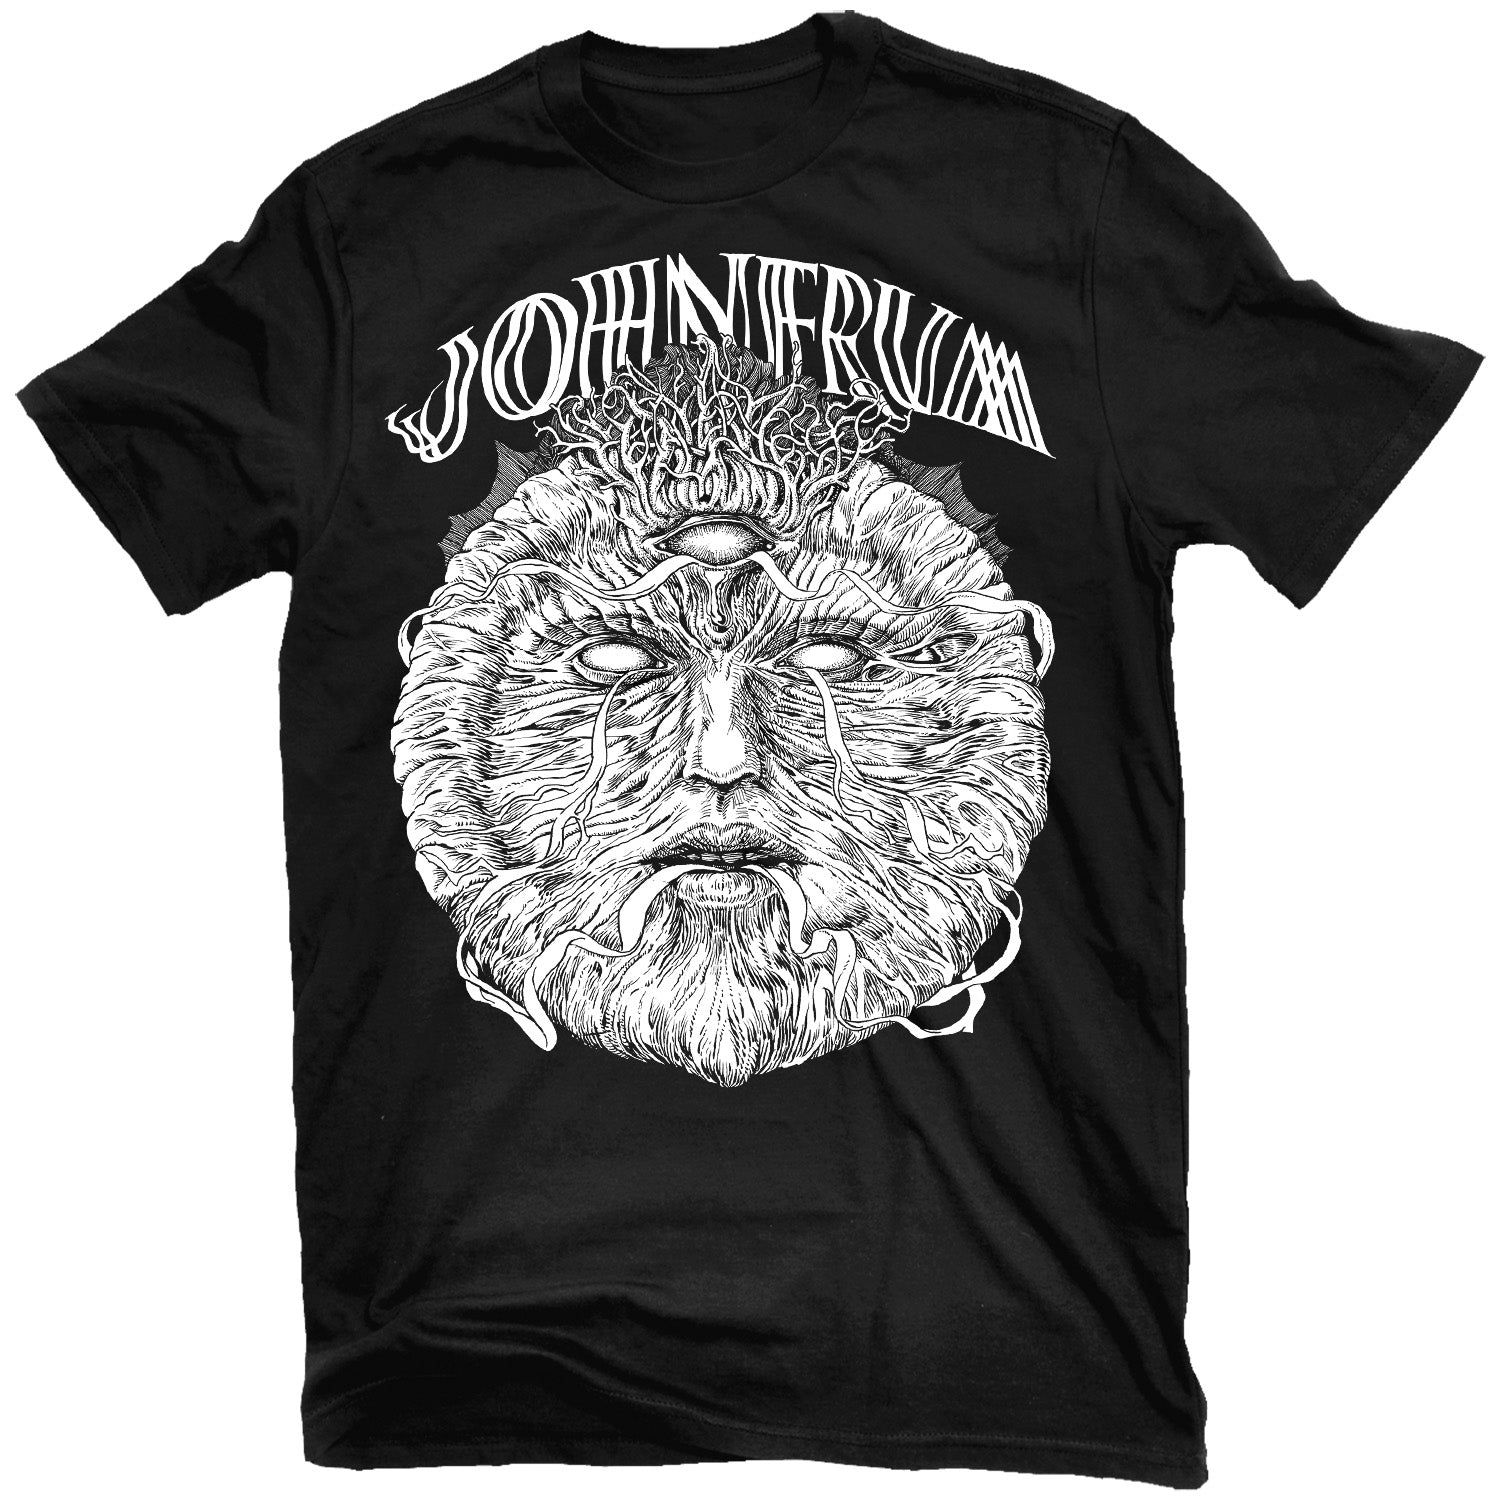 John Frum "Wicker Man" T-Shirt